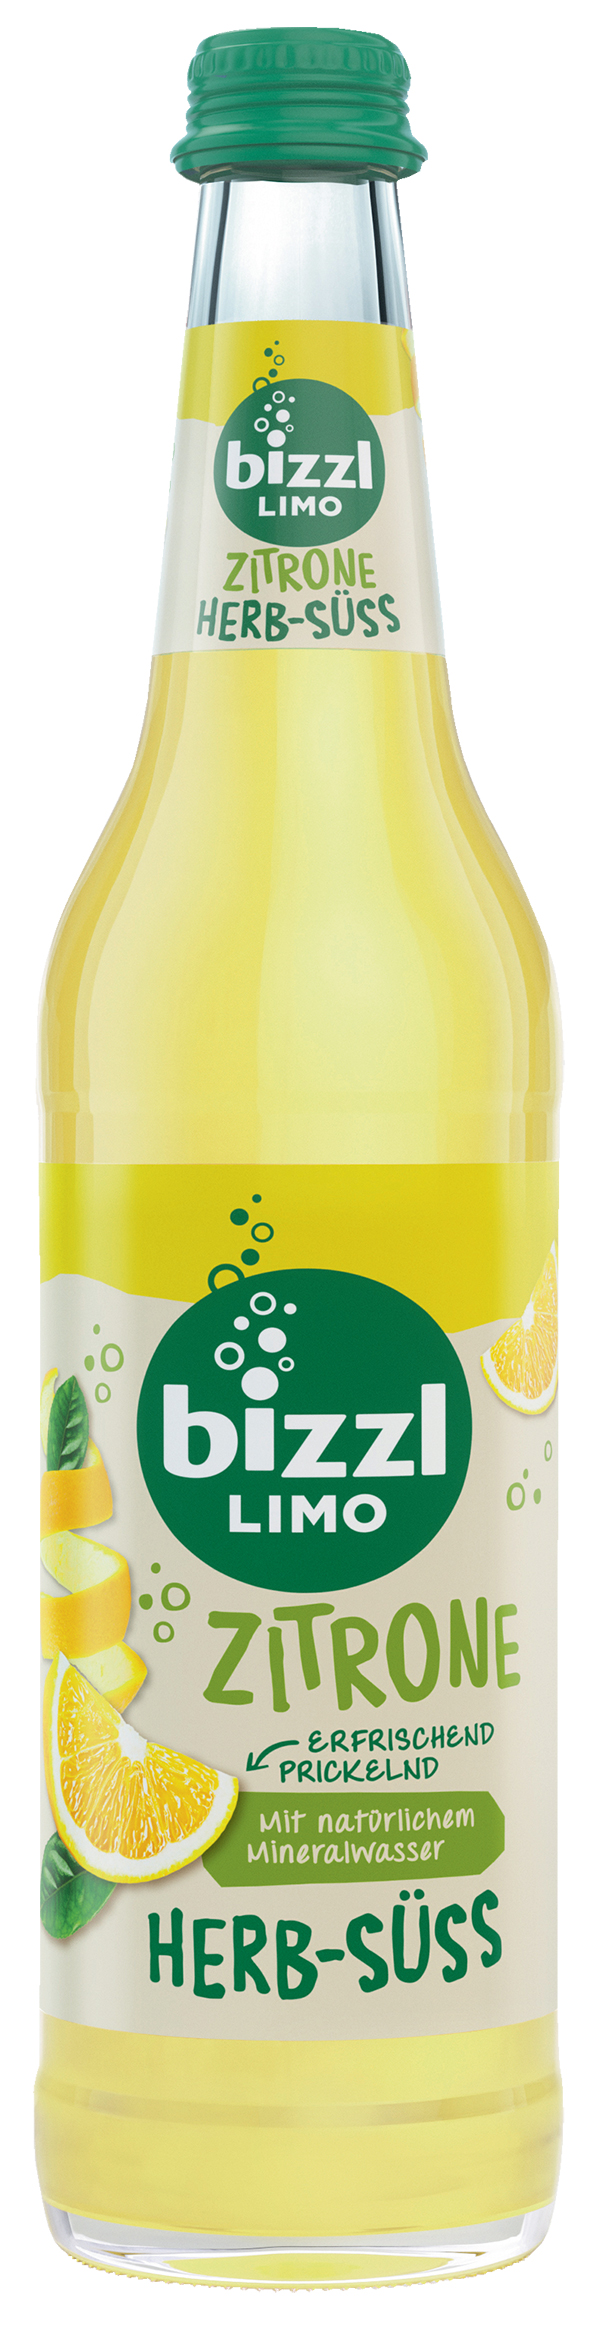 Bizzl HERB-SÜSS Zitrone  10 x 0,5 l (Glas)